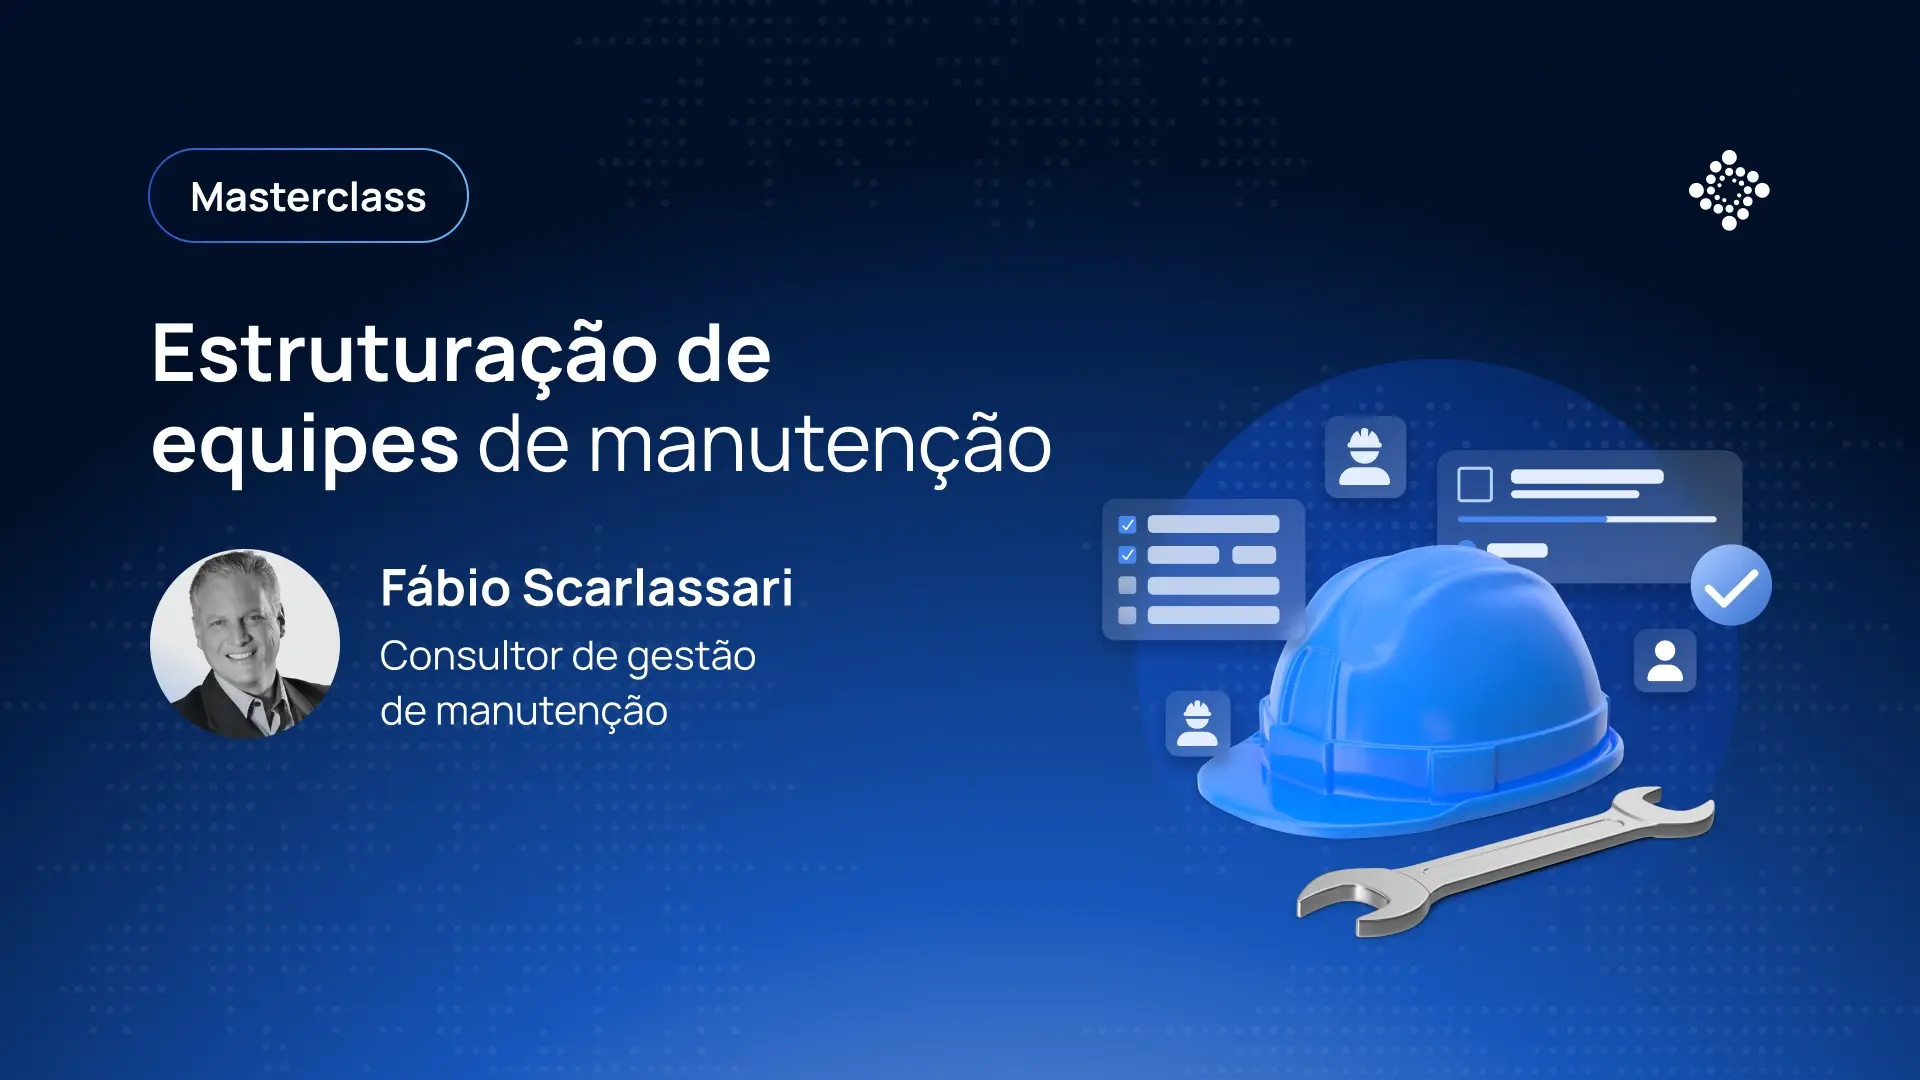 Masterclass: Estruturação de equipes de manutenção - Fábio Scarlassari